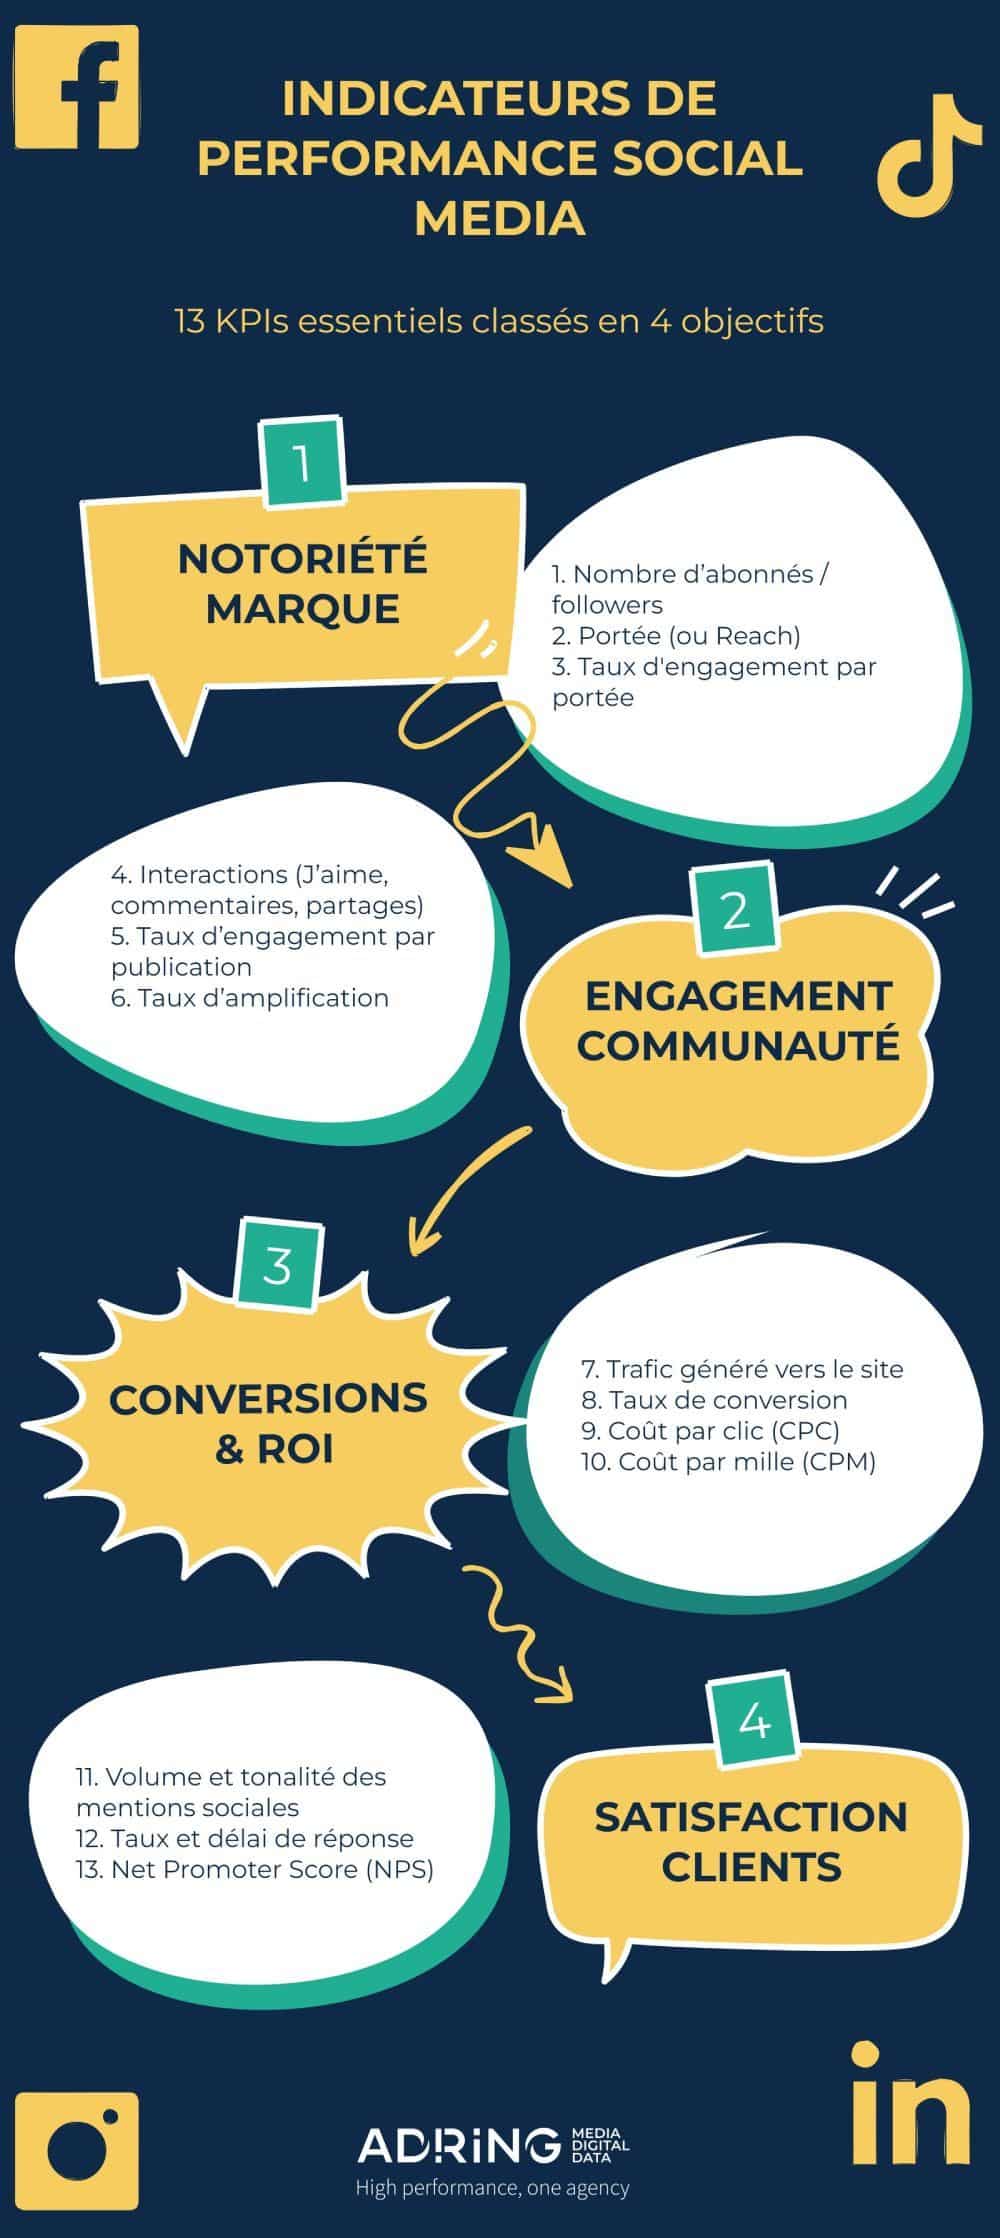 Infographie décrivant les indicateurs de performance clés (KPI) pour les médias sociaux, notamment la notoriété de la marque, l'engagement communautaire, les conversions et la satisfaction client.